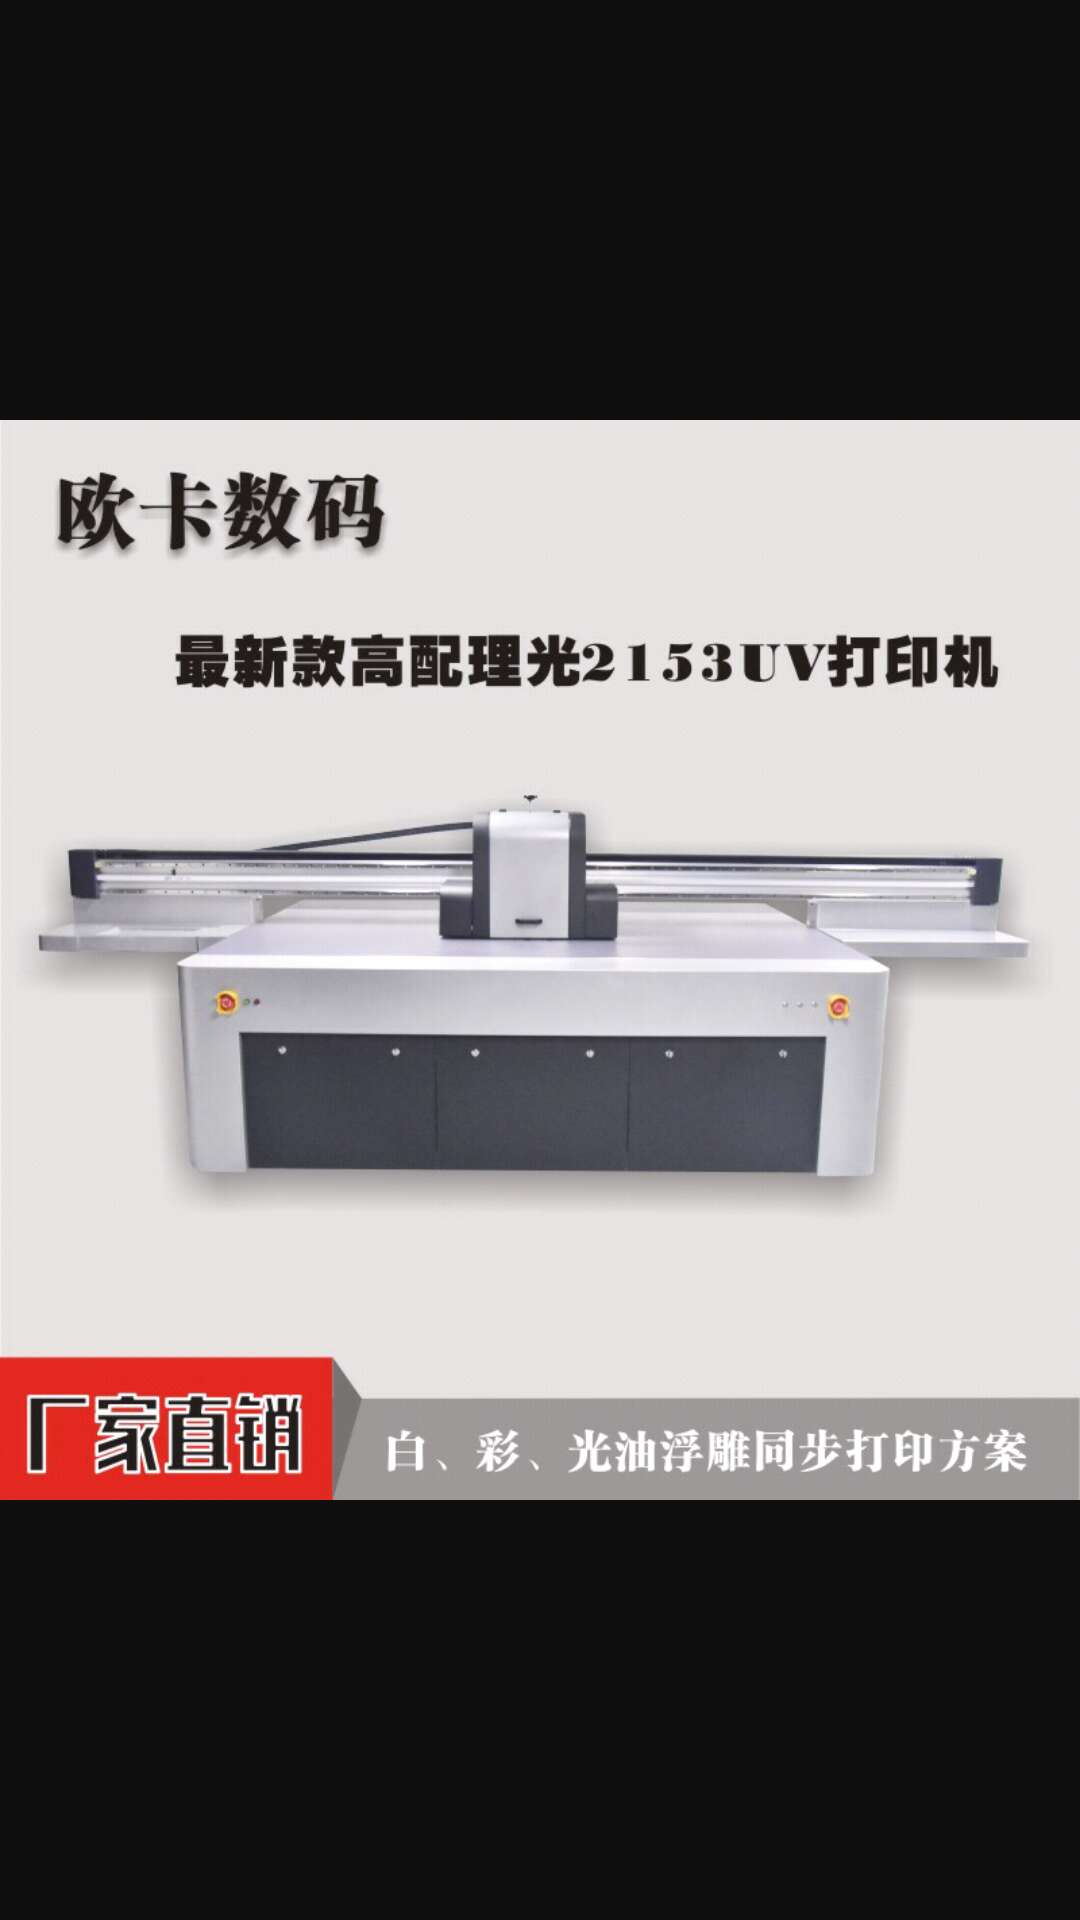 数码印刷机 欧卡uv打印机理光喷头2513机型1